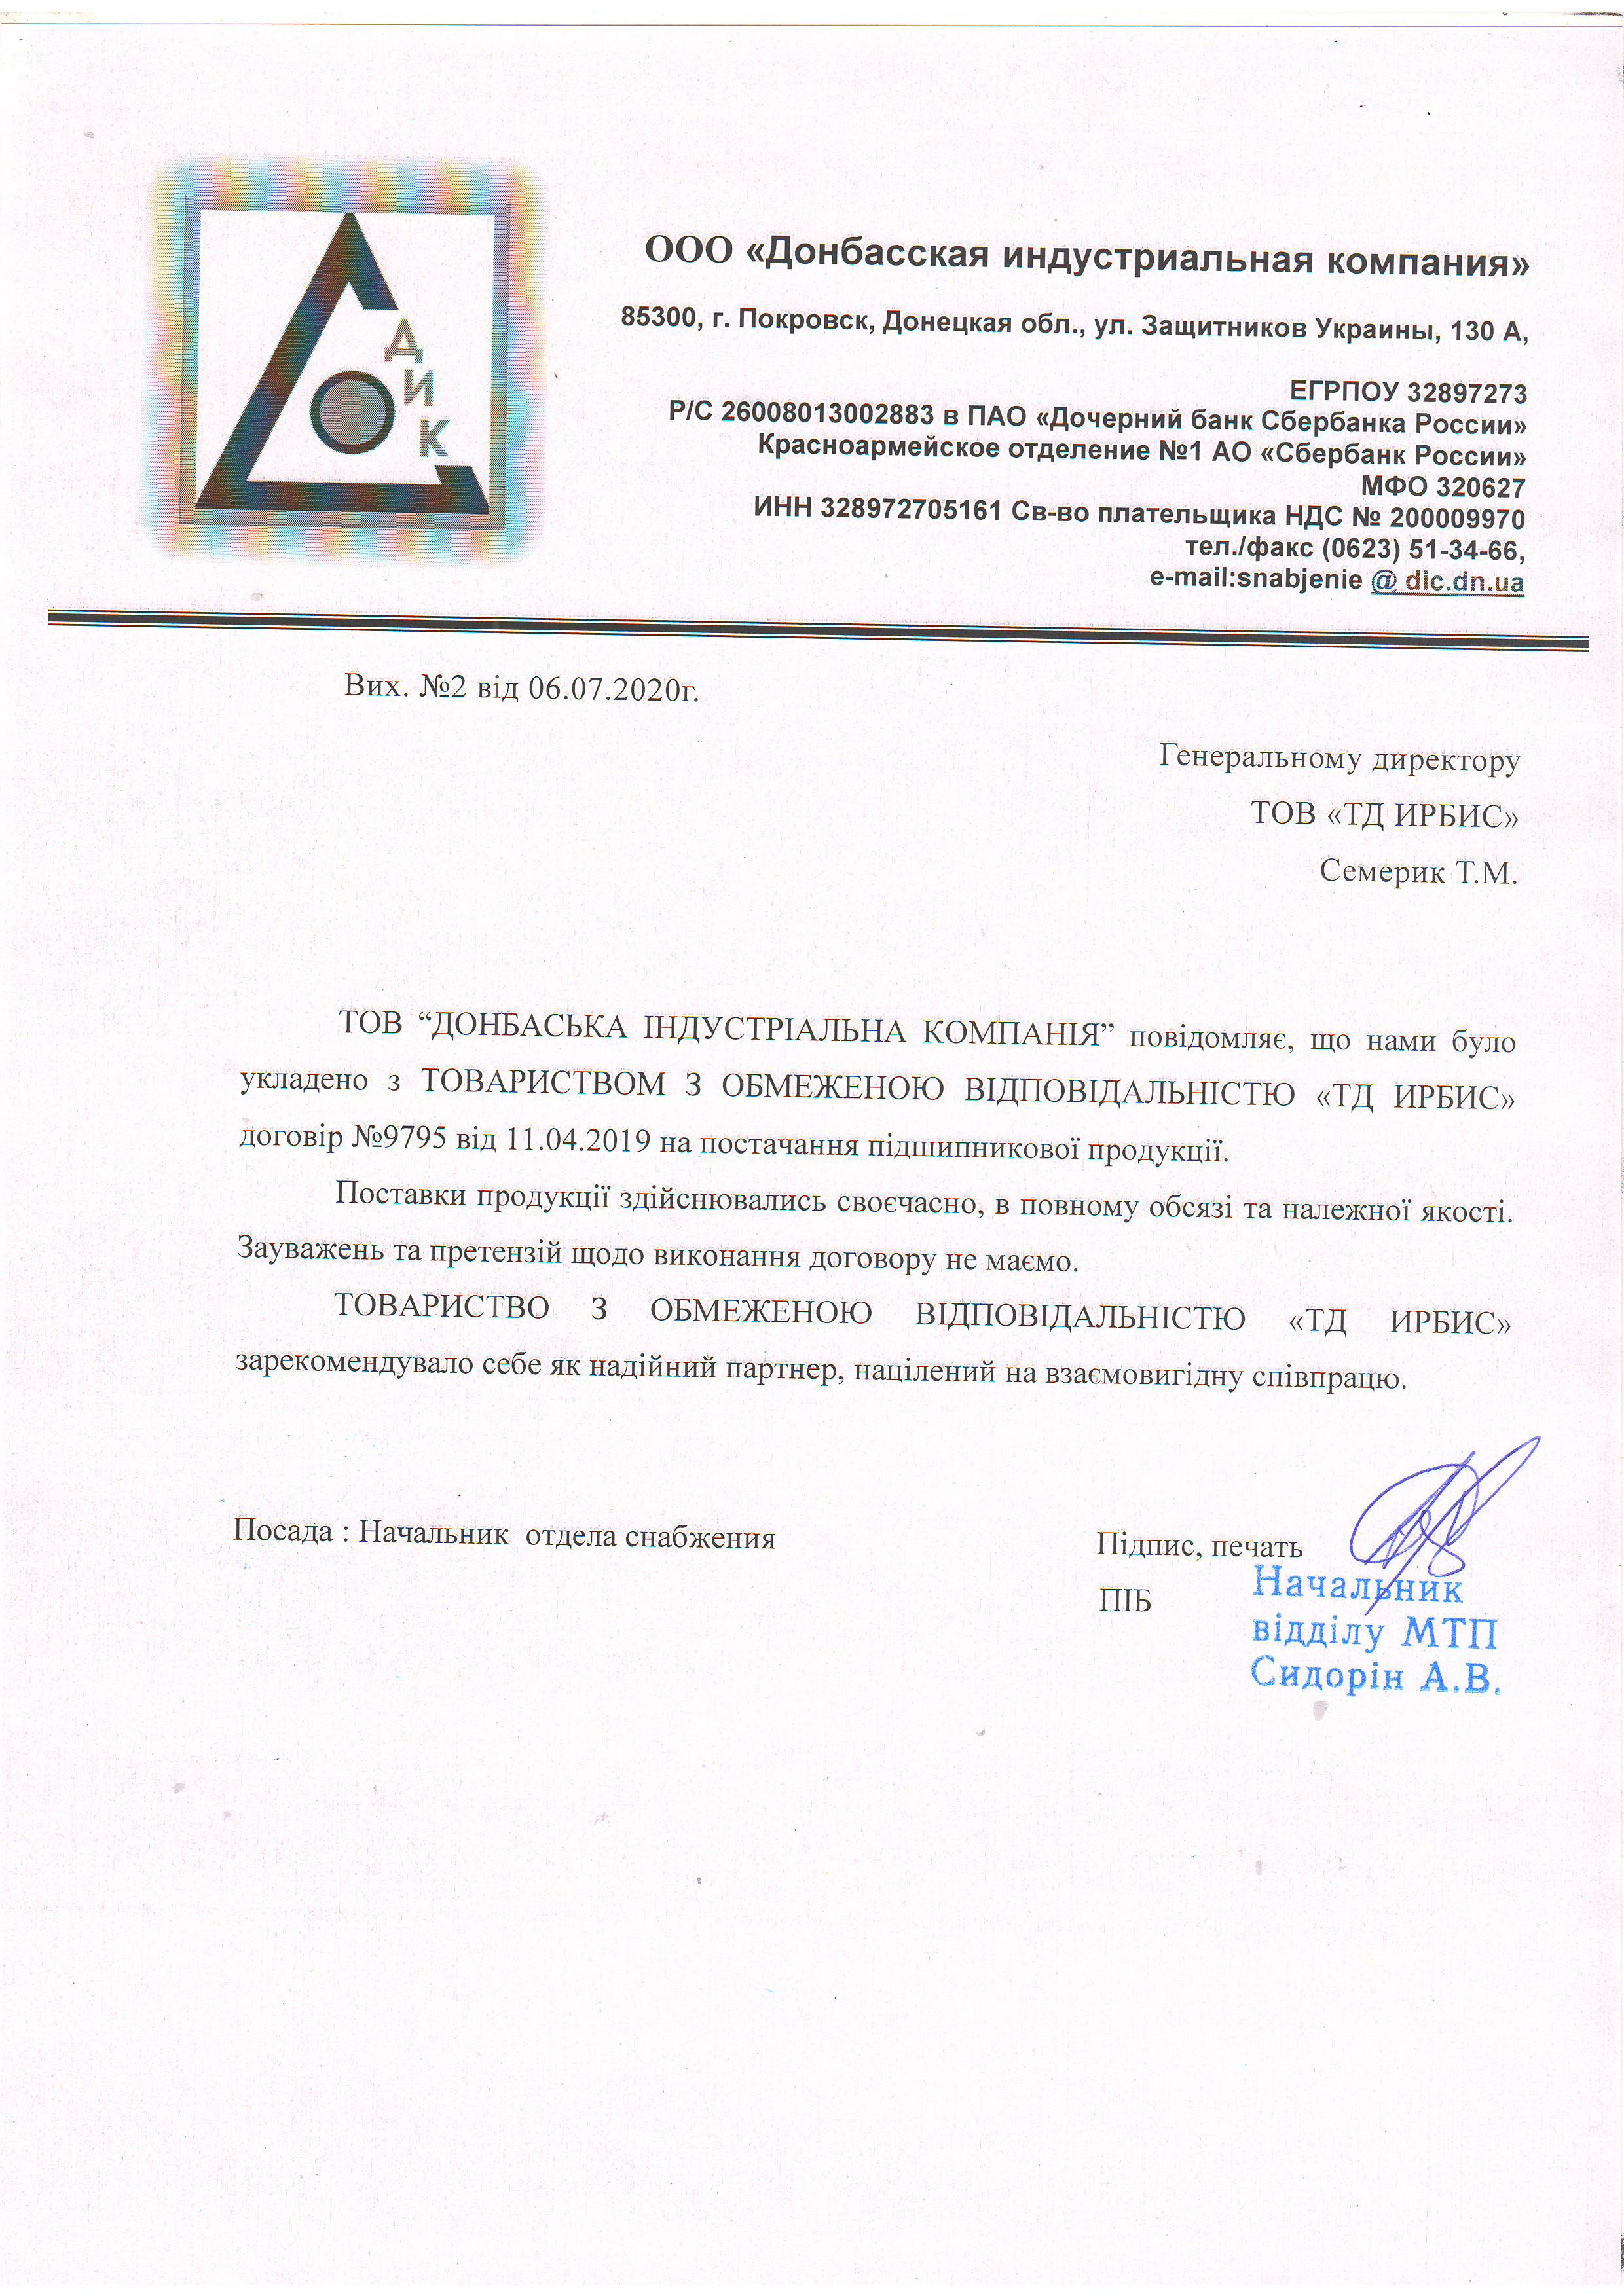 Рекомендательное письмо ООО Донбасская индустриальная компания 06.07.2020